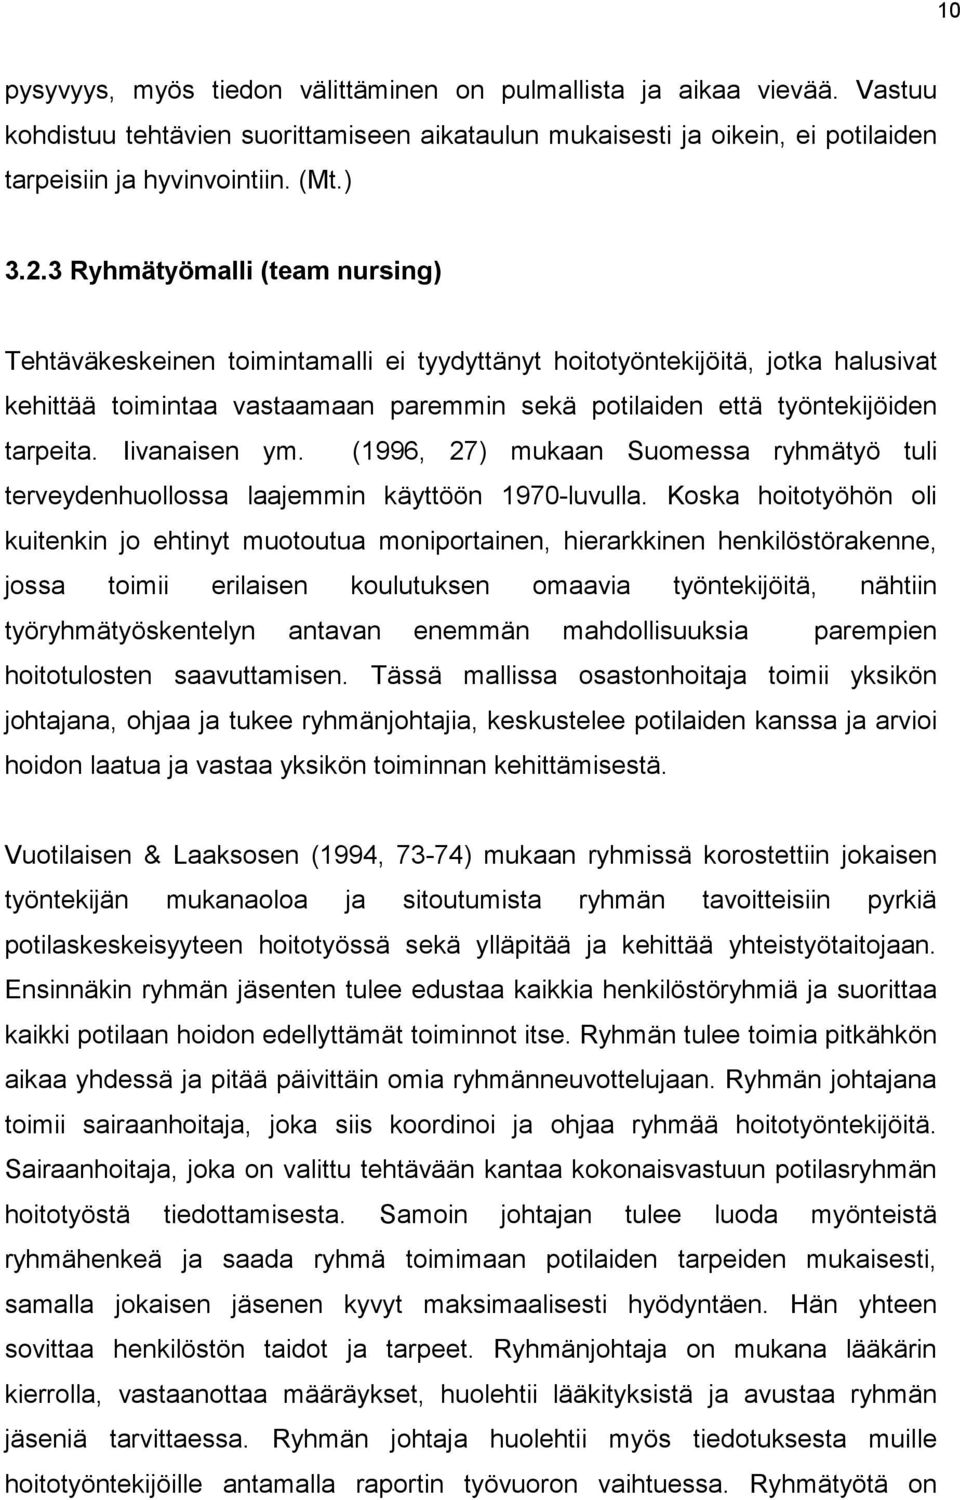 Iivanaisen ym. (1996, 27) mukaan Suomessa ryhmätyö tuli terveydenhuollossa laajemmin käyttöön 1970-luvulla.